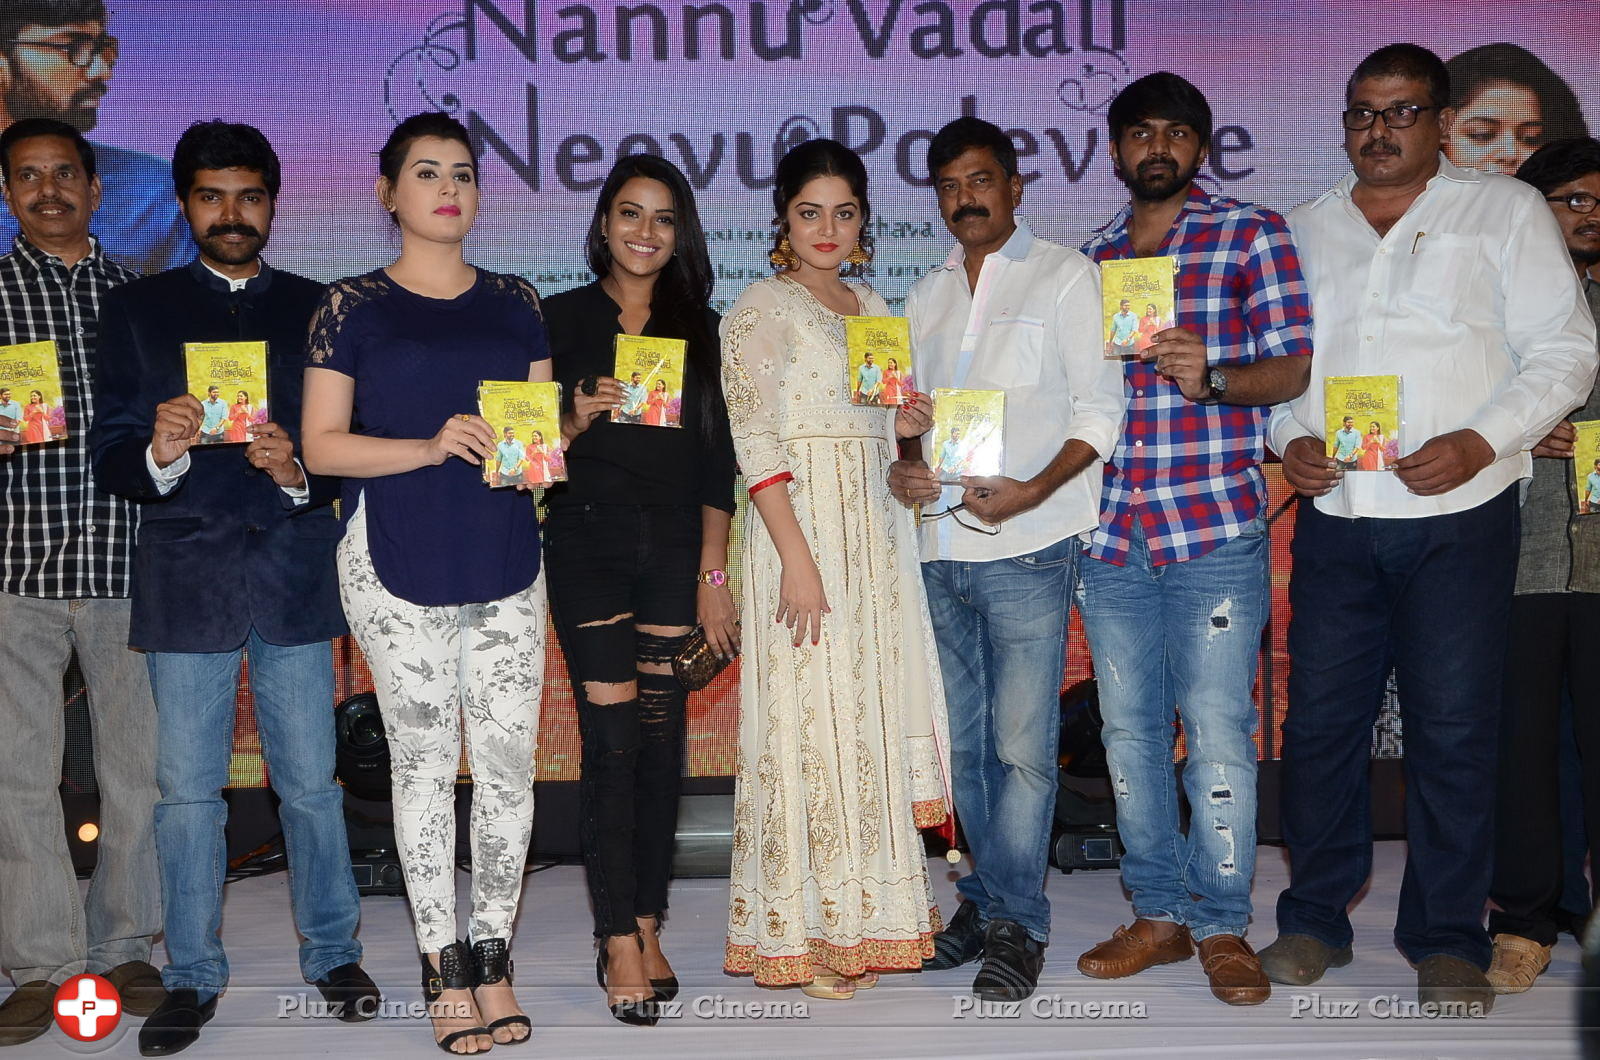 Nannu Vadili Neevu Polevule Movie Audio Launch Stills | Picture 1262031